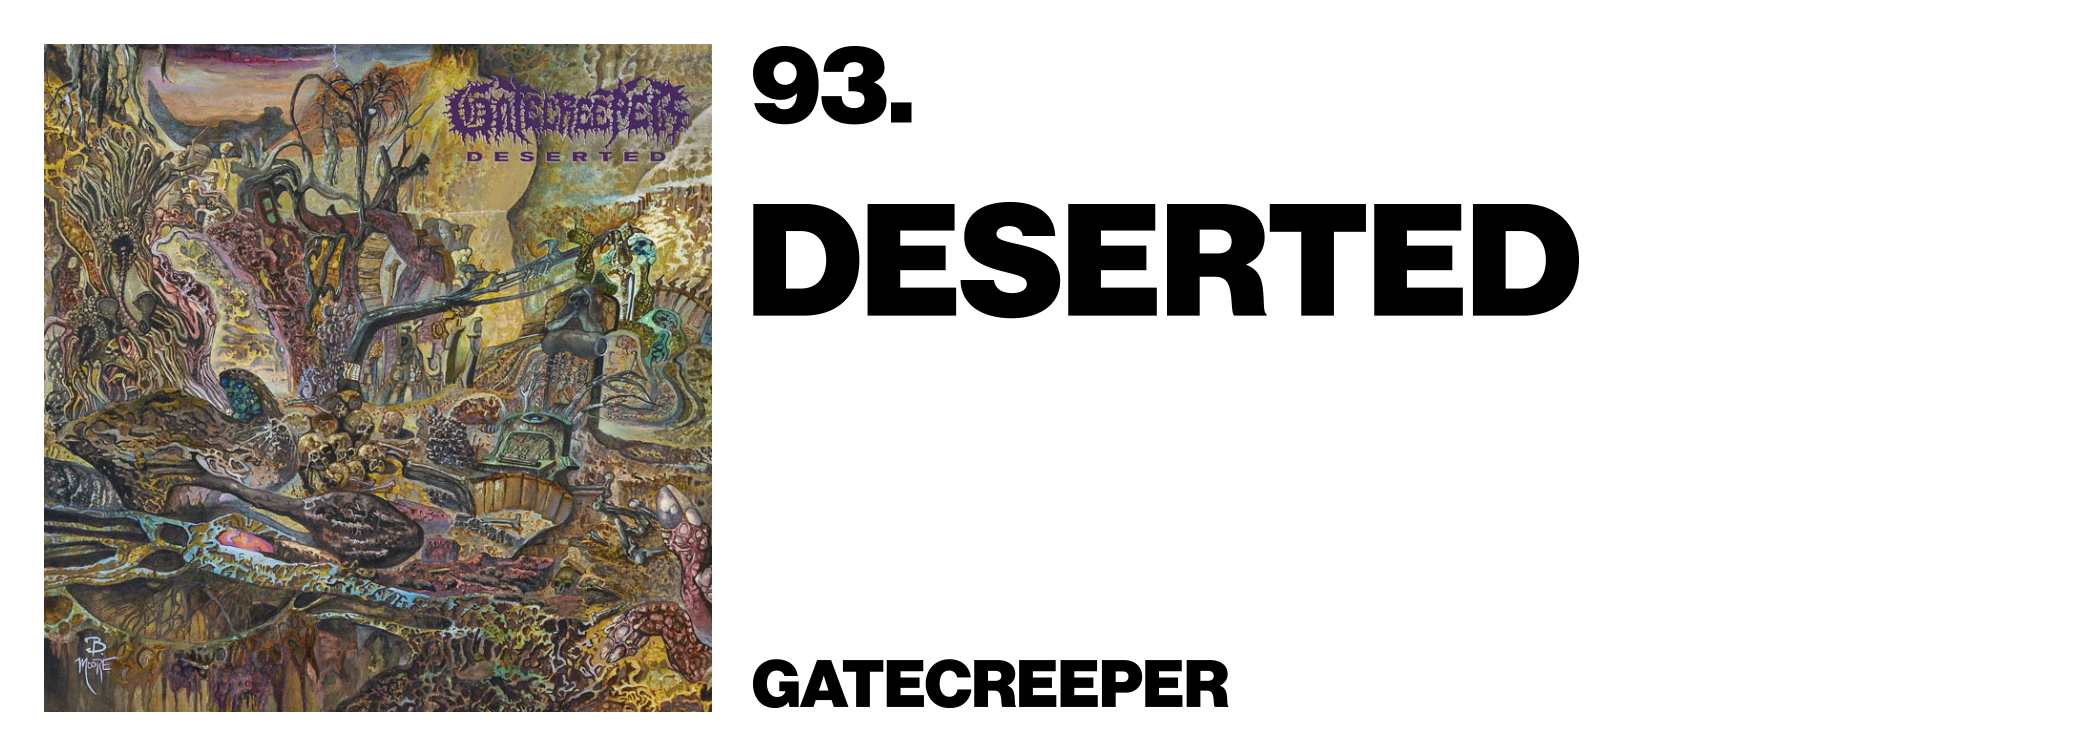 1575920129498-93-Gatecreeper-Deserted